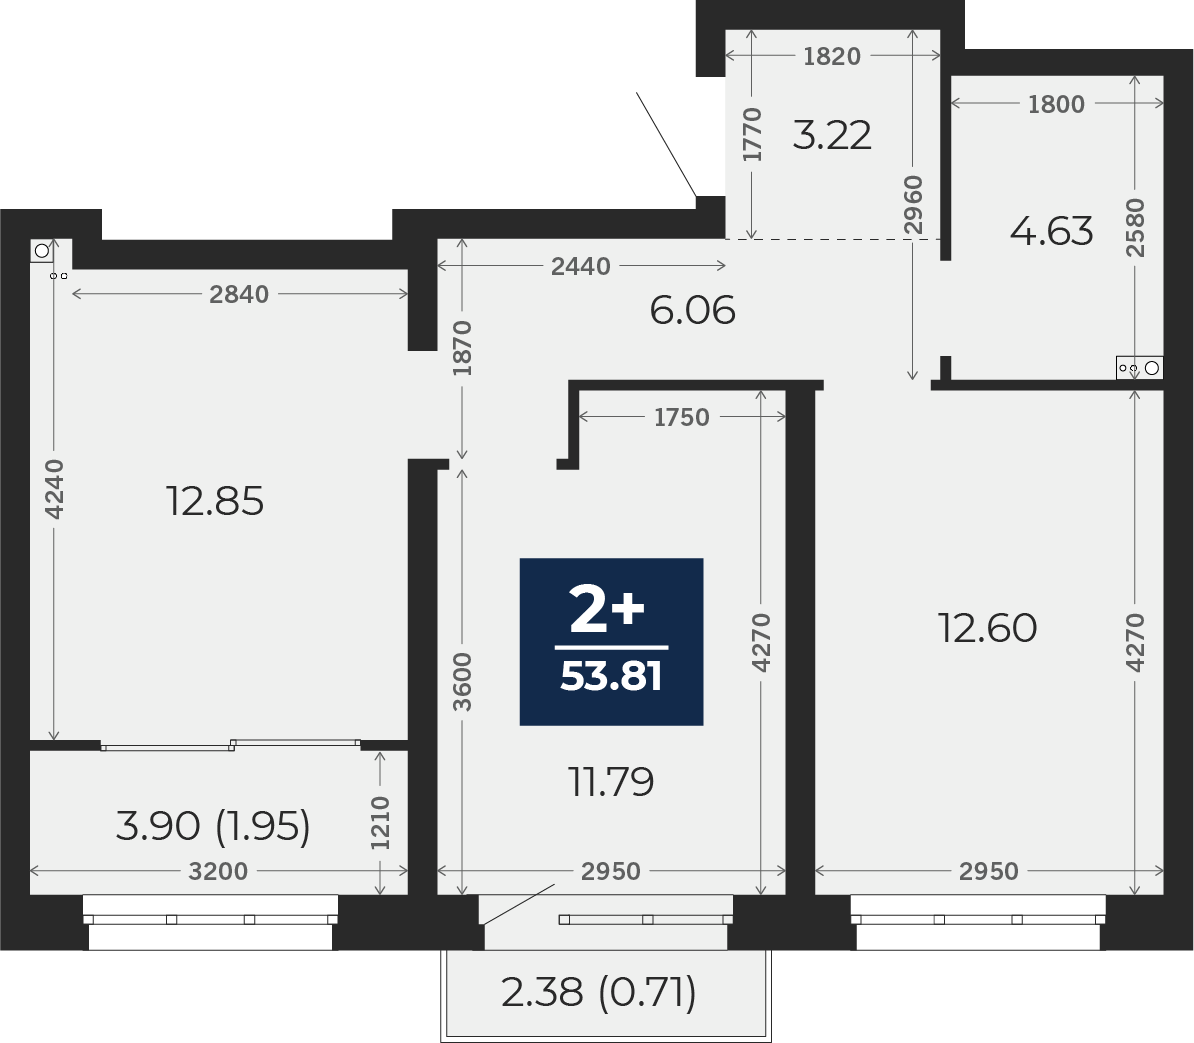 Квартира № 562, 2-комнатная, 53.81 кв. м, 4 этаж